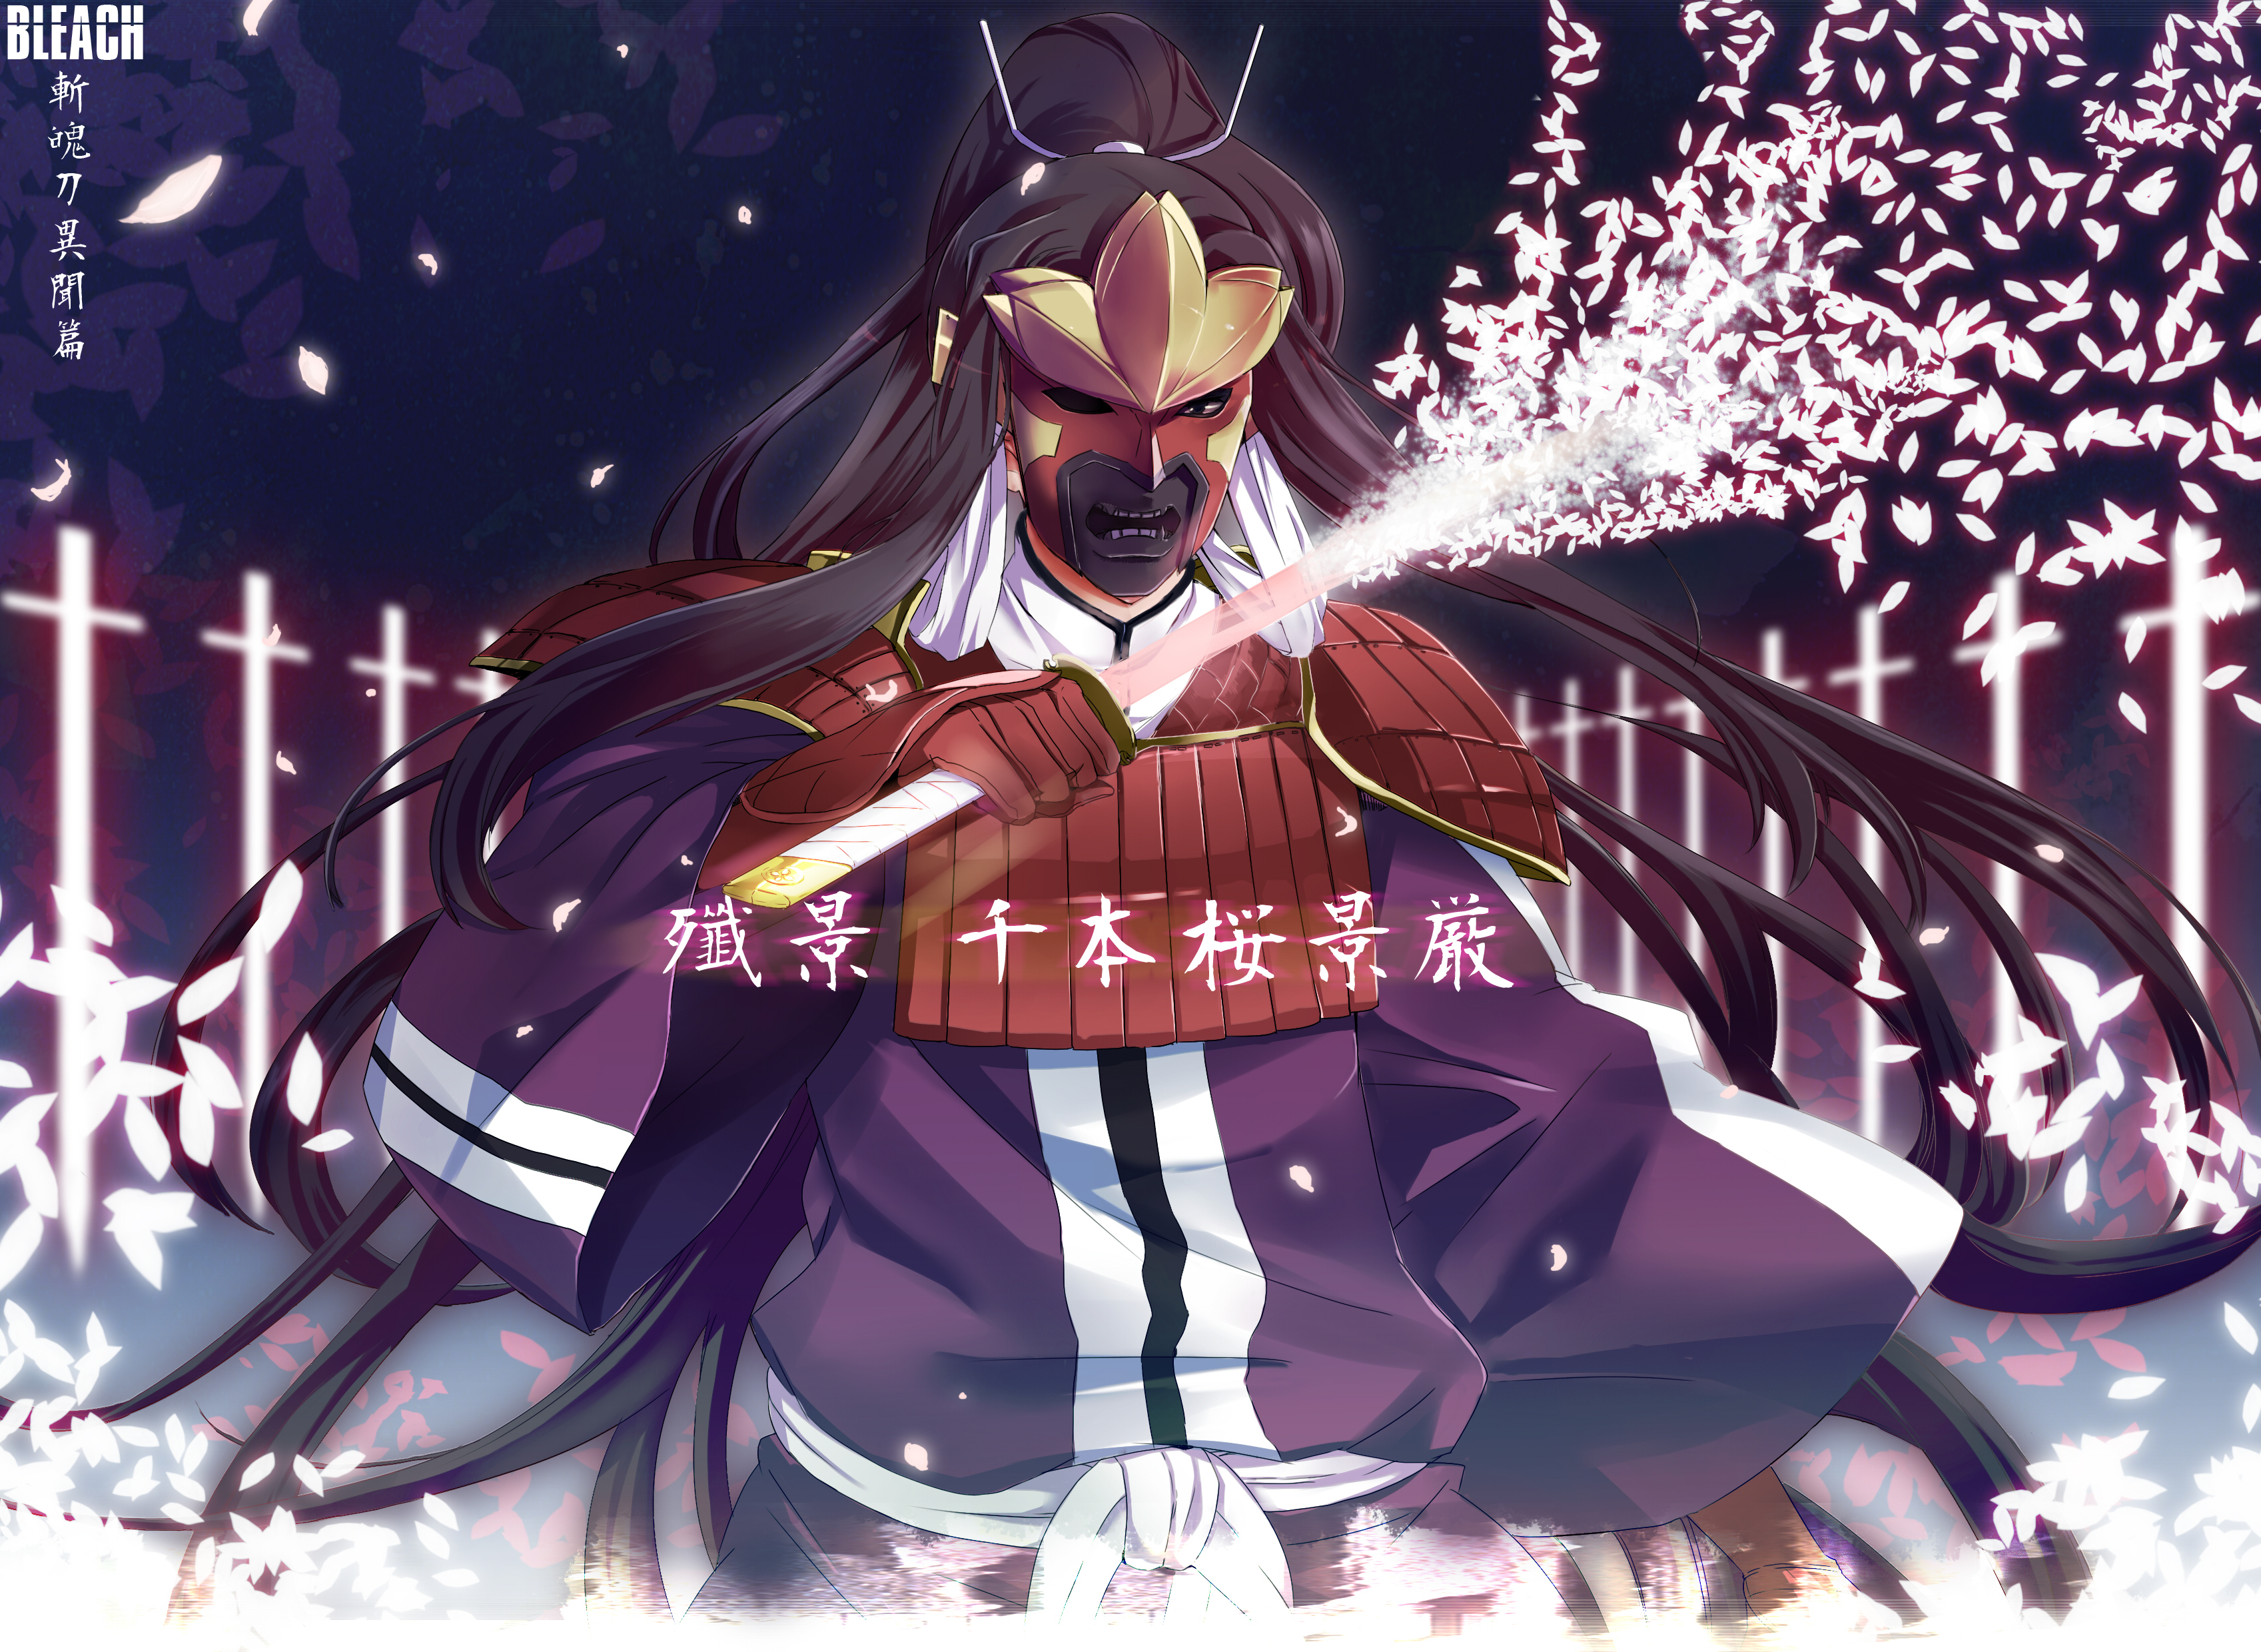 Senbonzakura Bleach HD Wallpaper Background Image